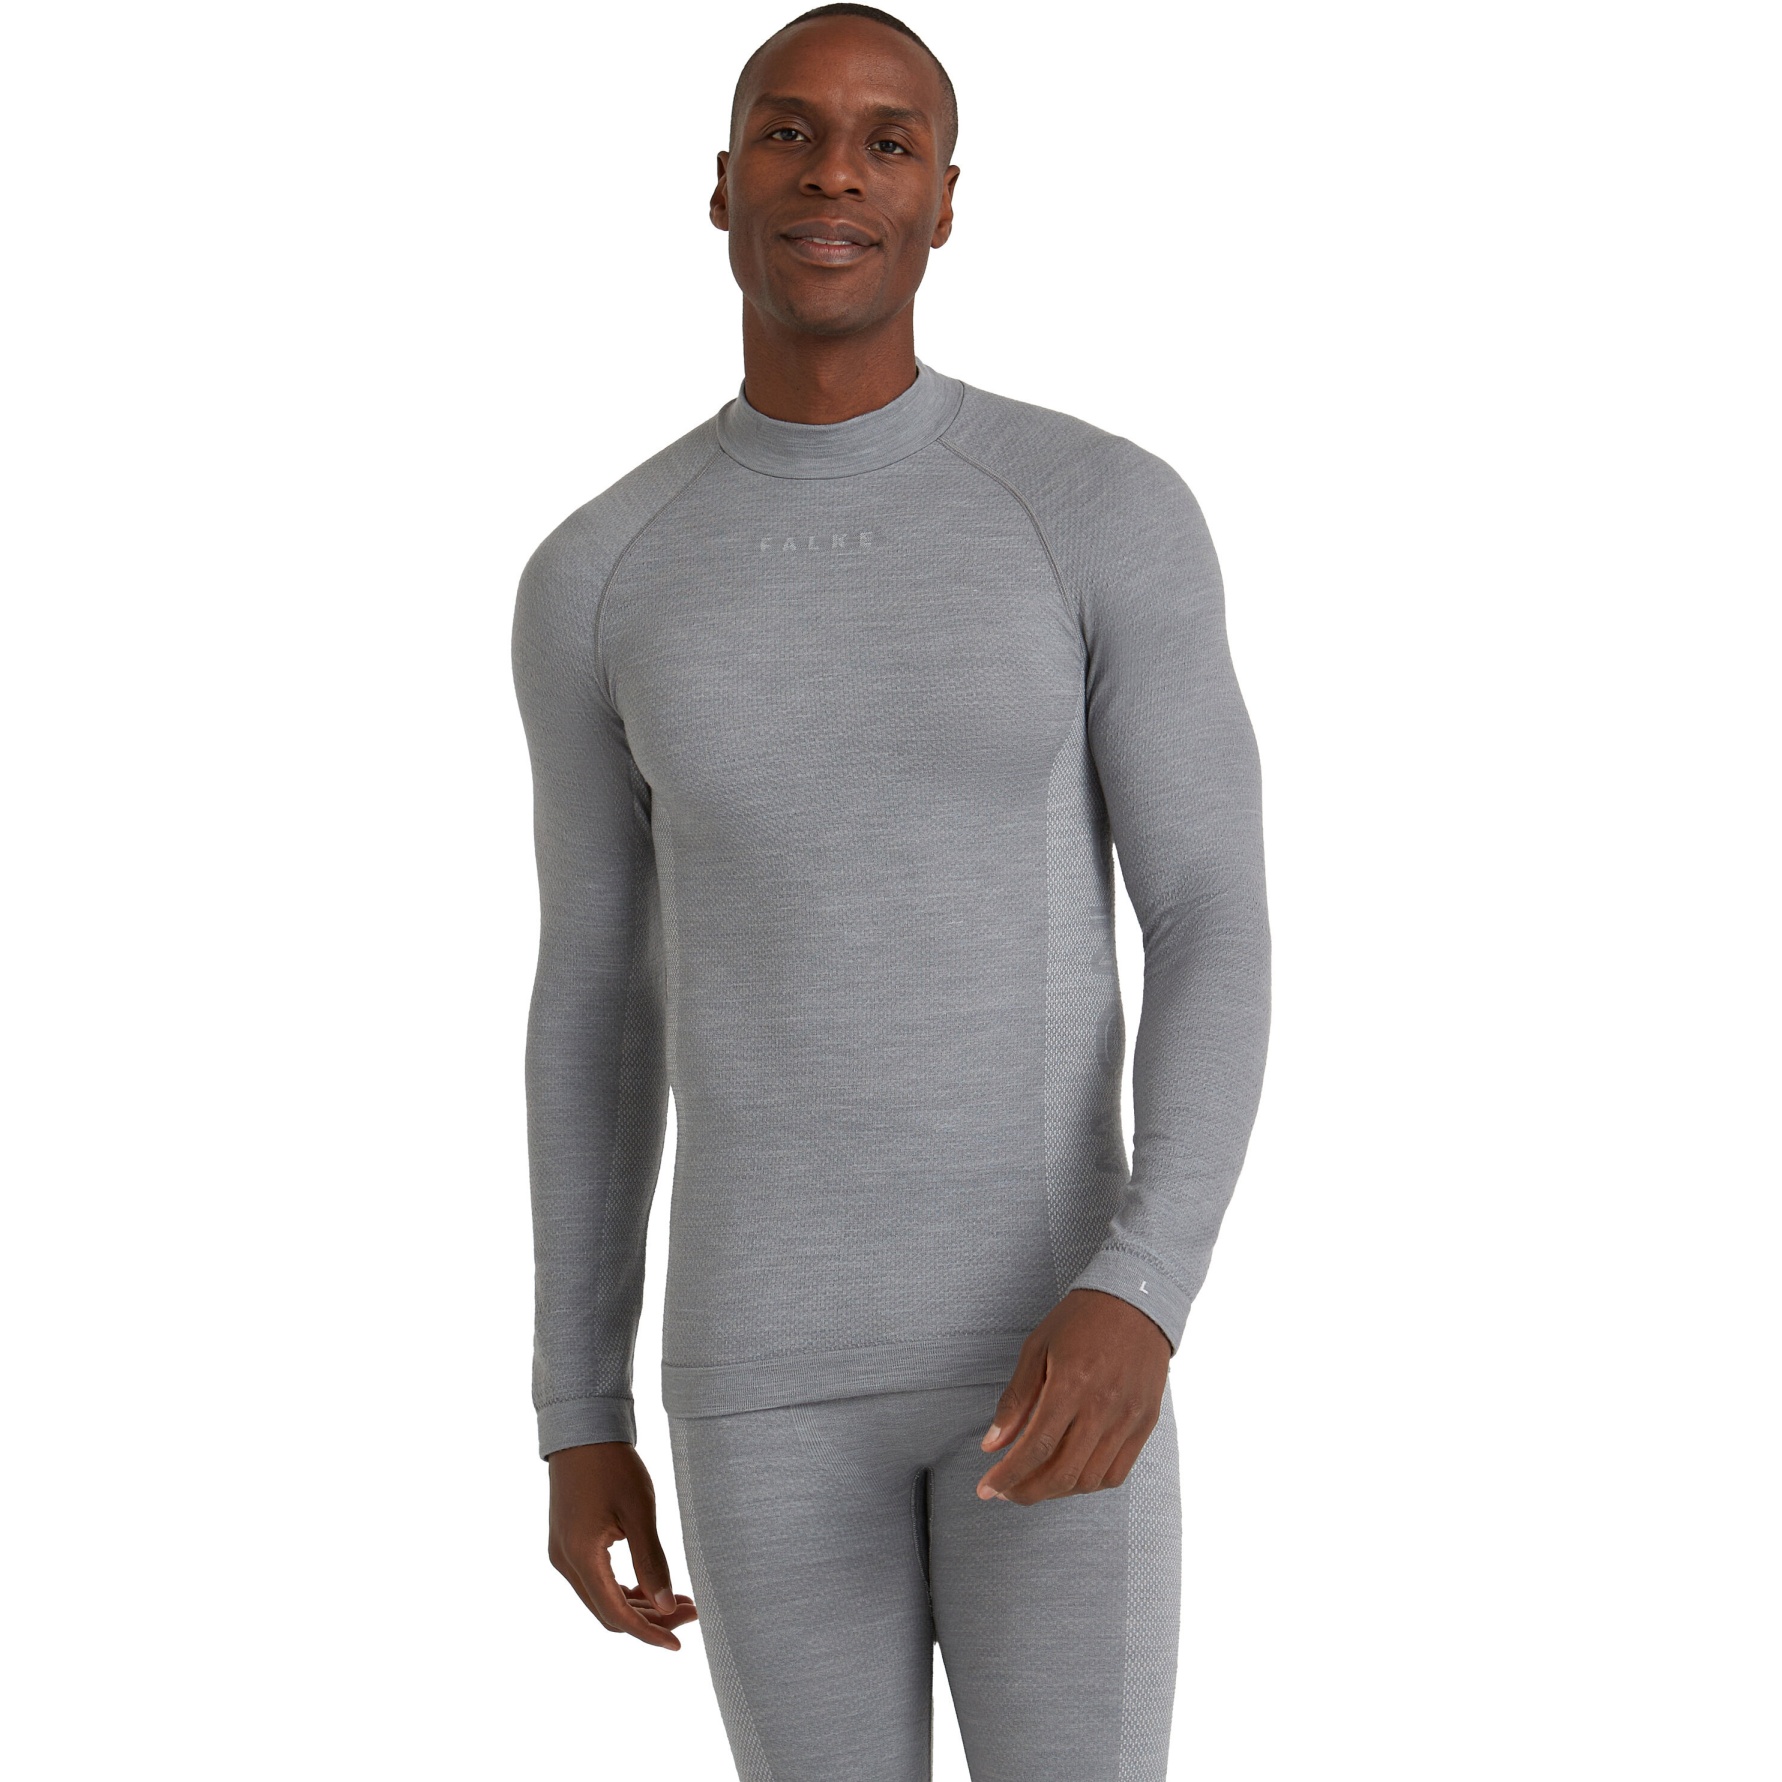 Picture of Falke Wool-Tech Trend Longsleeve Shirt - grey-heather 3757